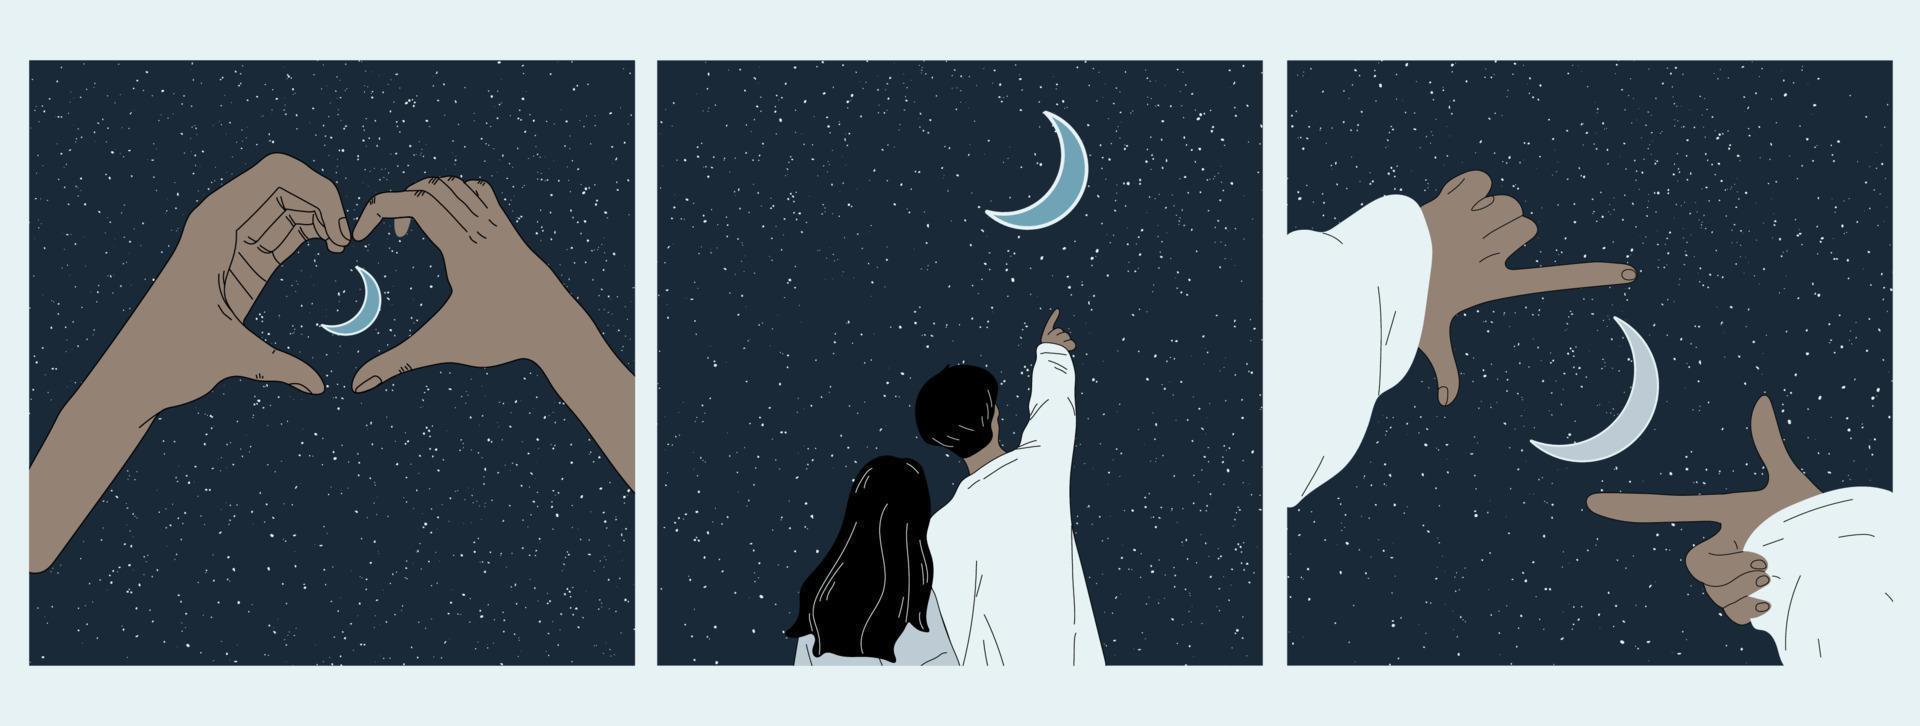 un juego de tres manos muestra el corazón en la noche iluminada por la luna. ilustración de vector romántico con silueta de gesto de mano sobre fondo estrellado. luna en cielo estrellado